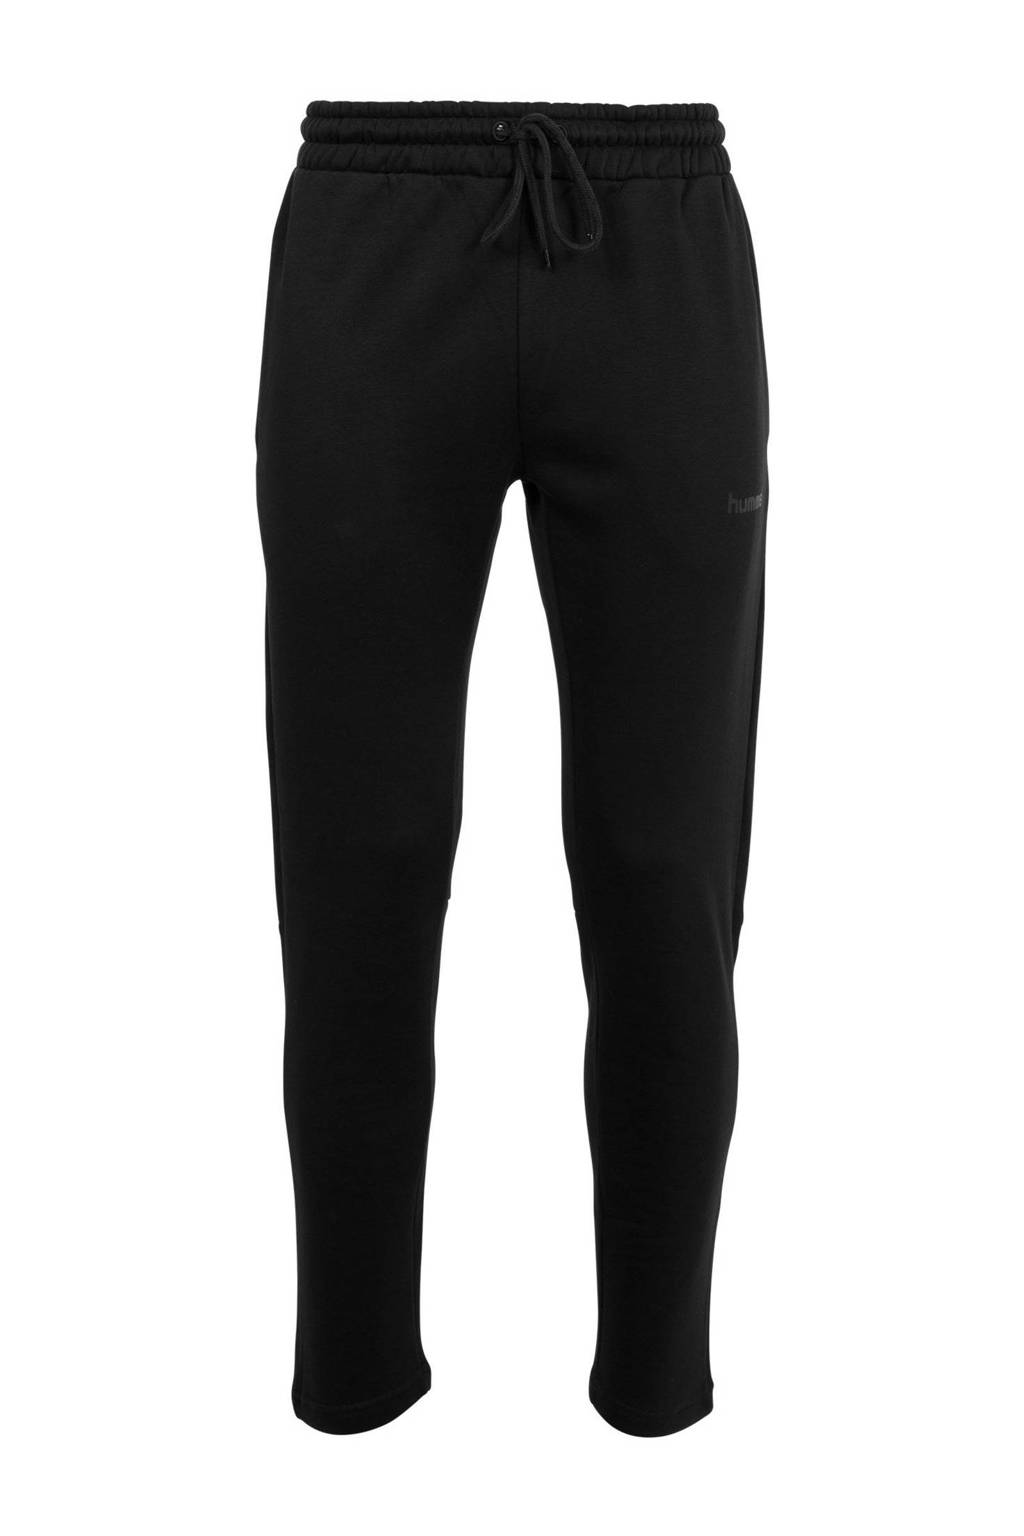 Zwarte heren hummel trainingsbroek van polyester met regular fit, regular waist, elastische tailleband met koord en logo dessin